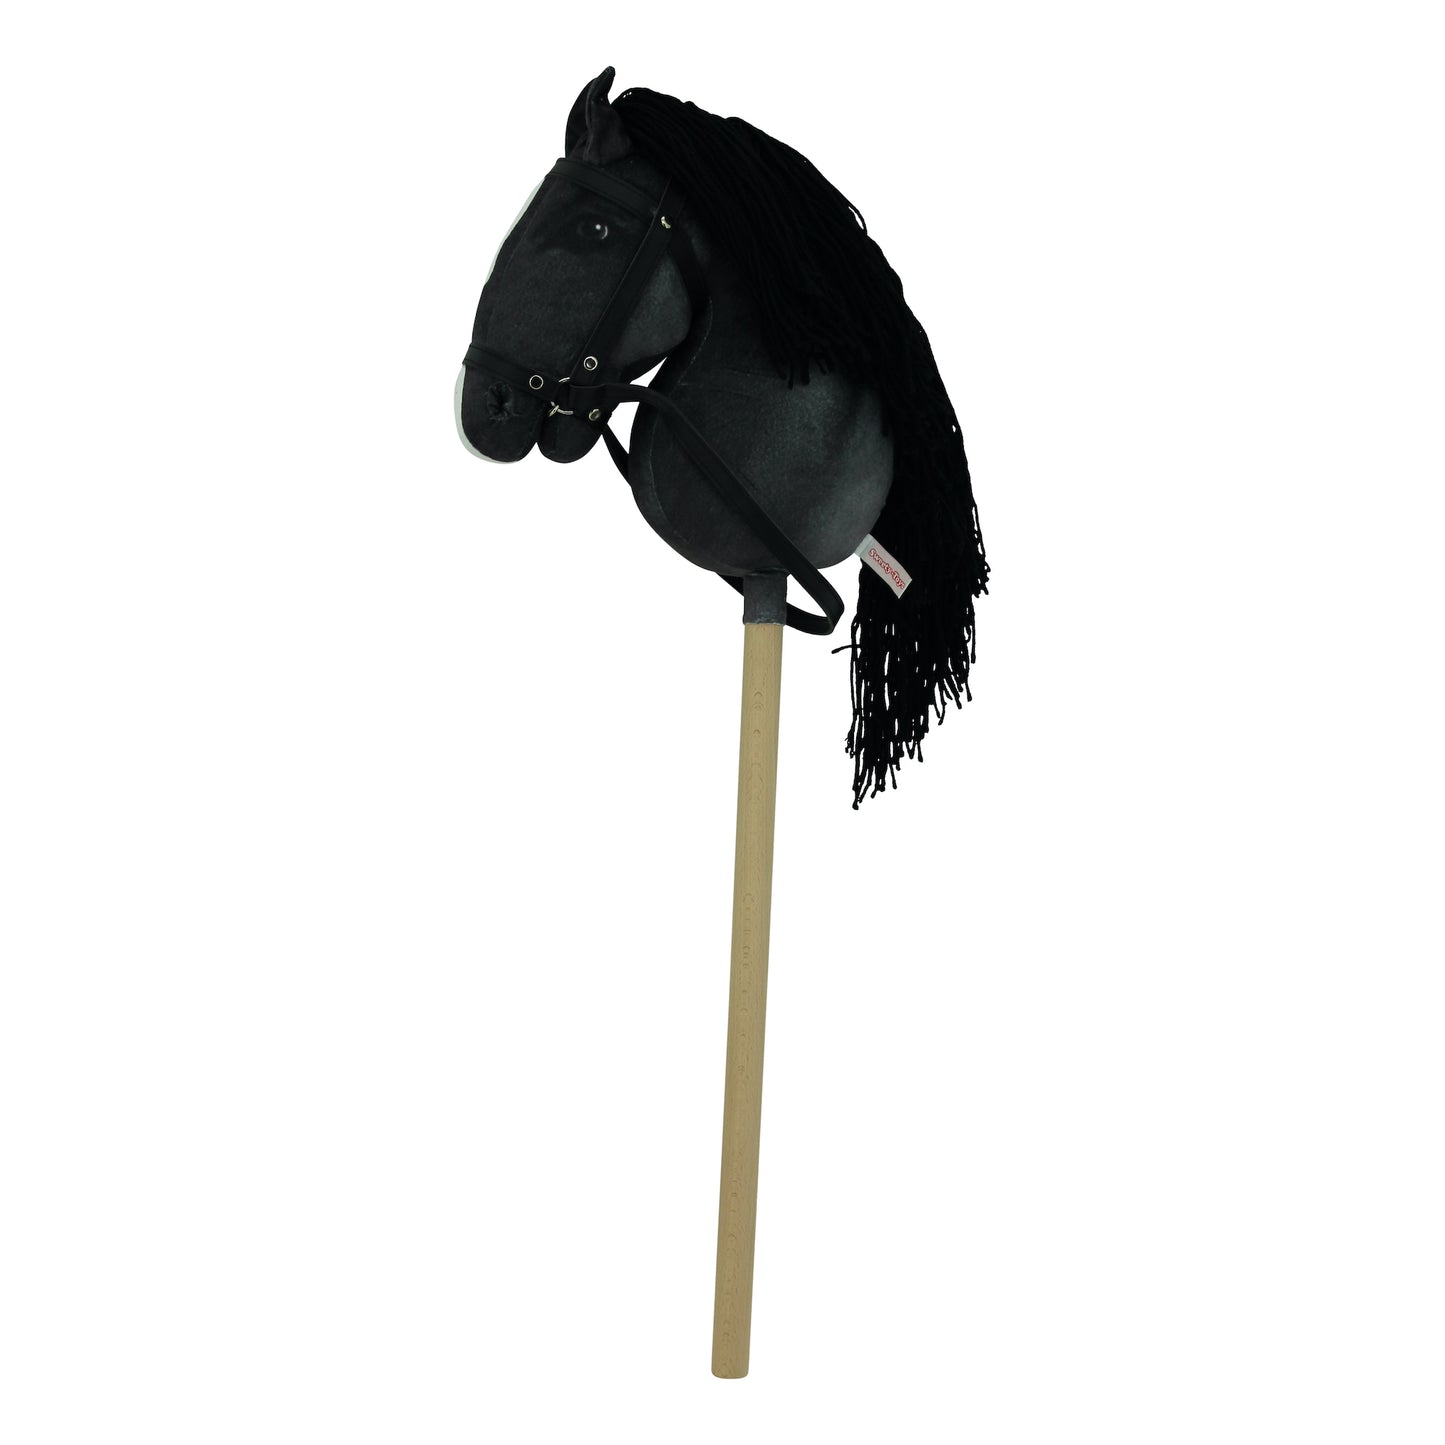 Haasenstrauch Sweety Toys Hobbyhorse Steckenpferd schwarz geeignet für Hobbyhorsing & Transportbeutel Turnbeutel